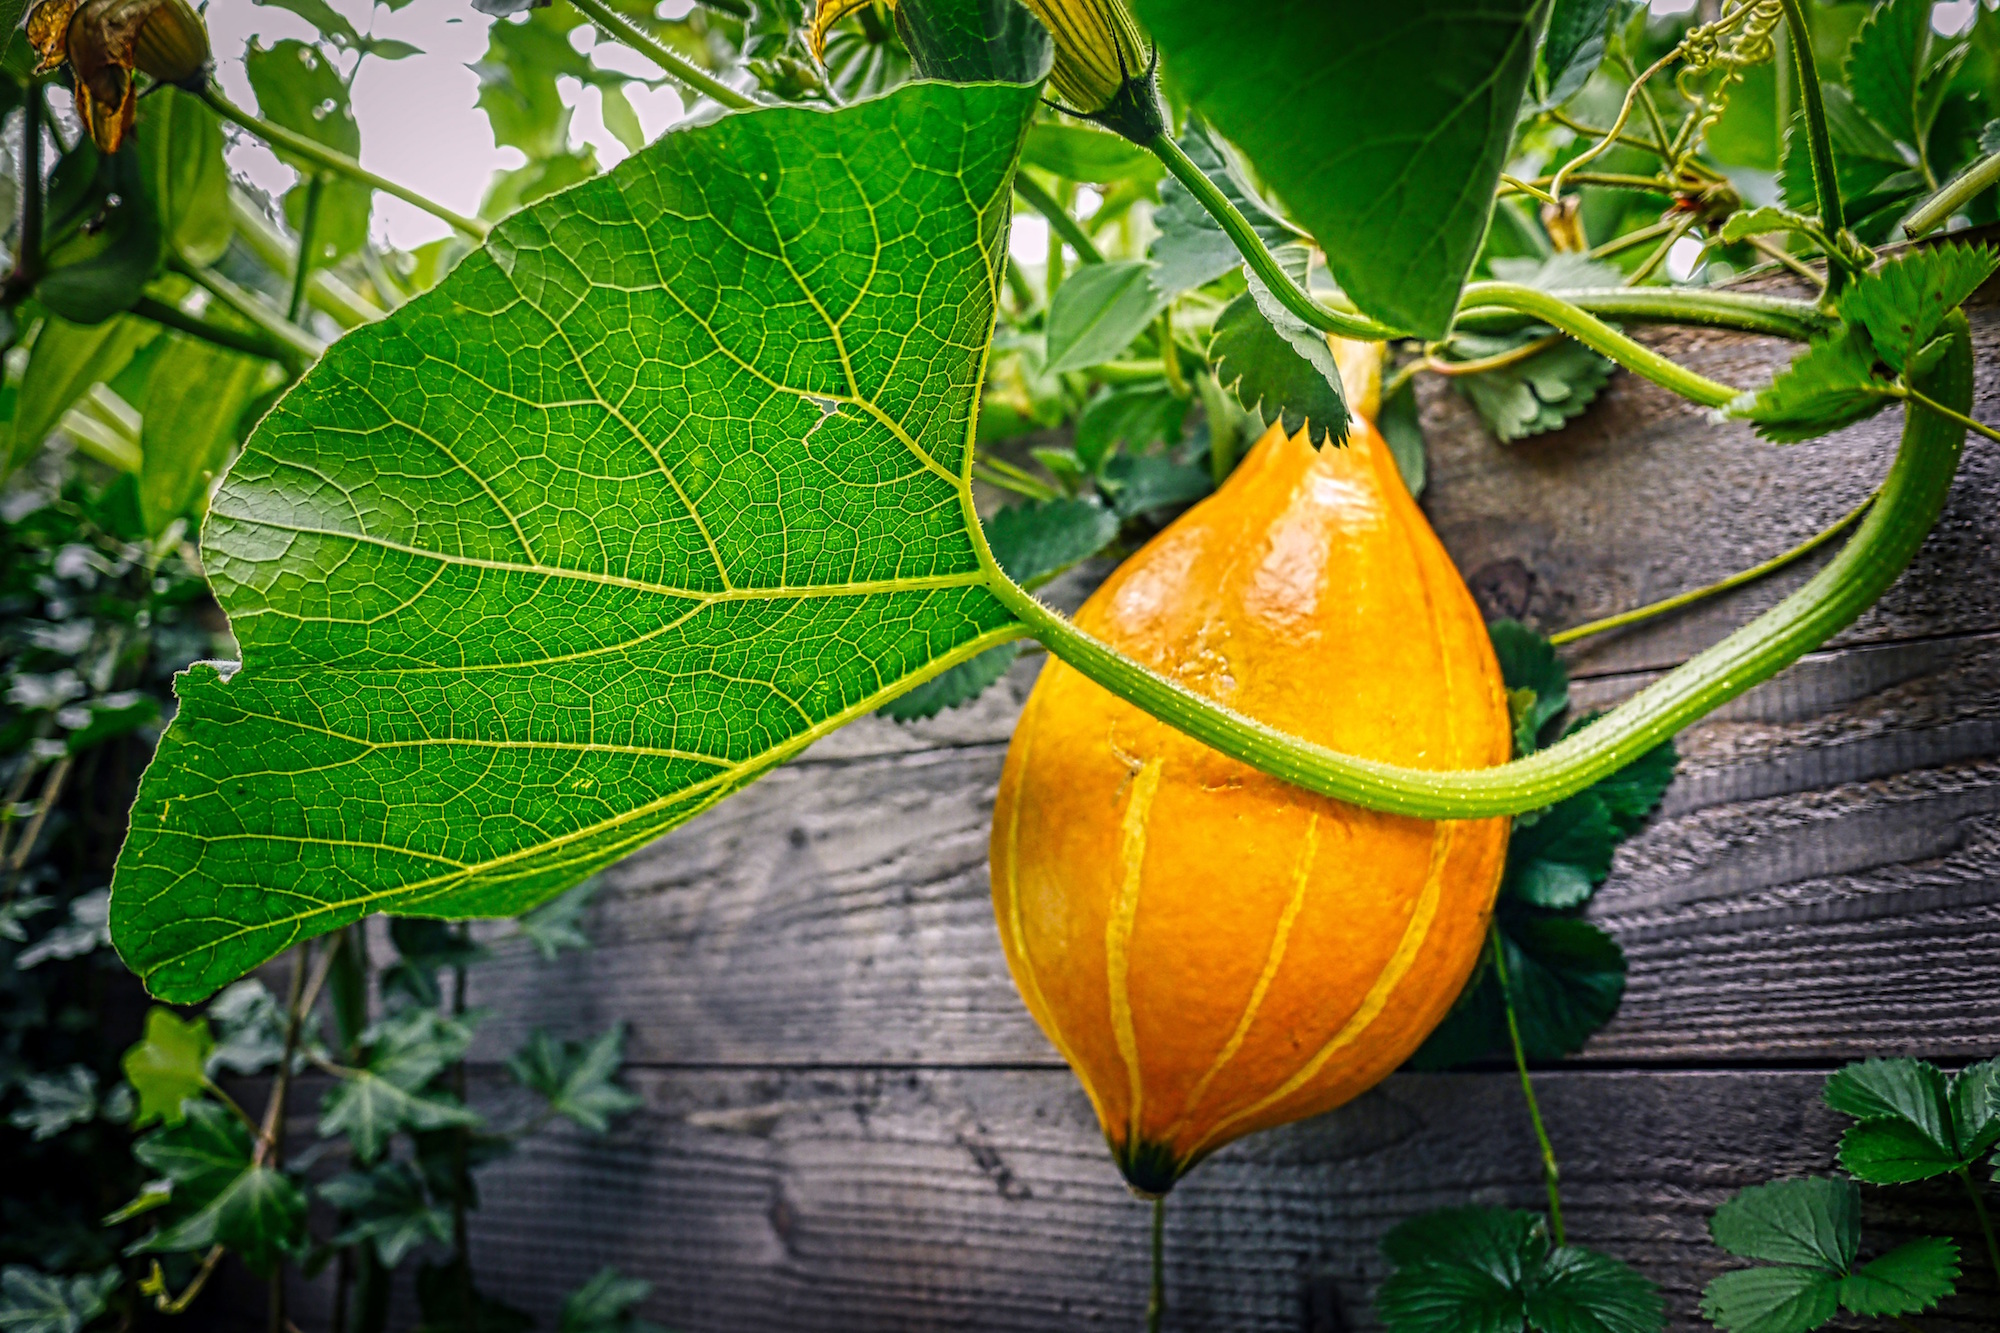 Gemüse, Obst und Kräuter selbst anzubauen im Hoch- oder Freibeet, macht nicht nur Spaß, es bereichert auch den Speisezettel mit gesunden Sachen. (c) www.pixabay.com